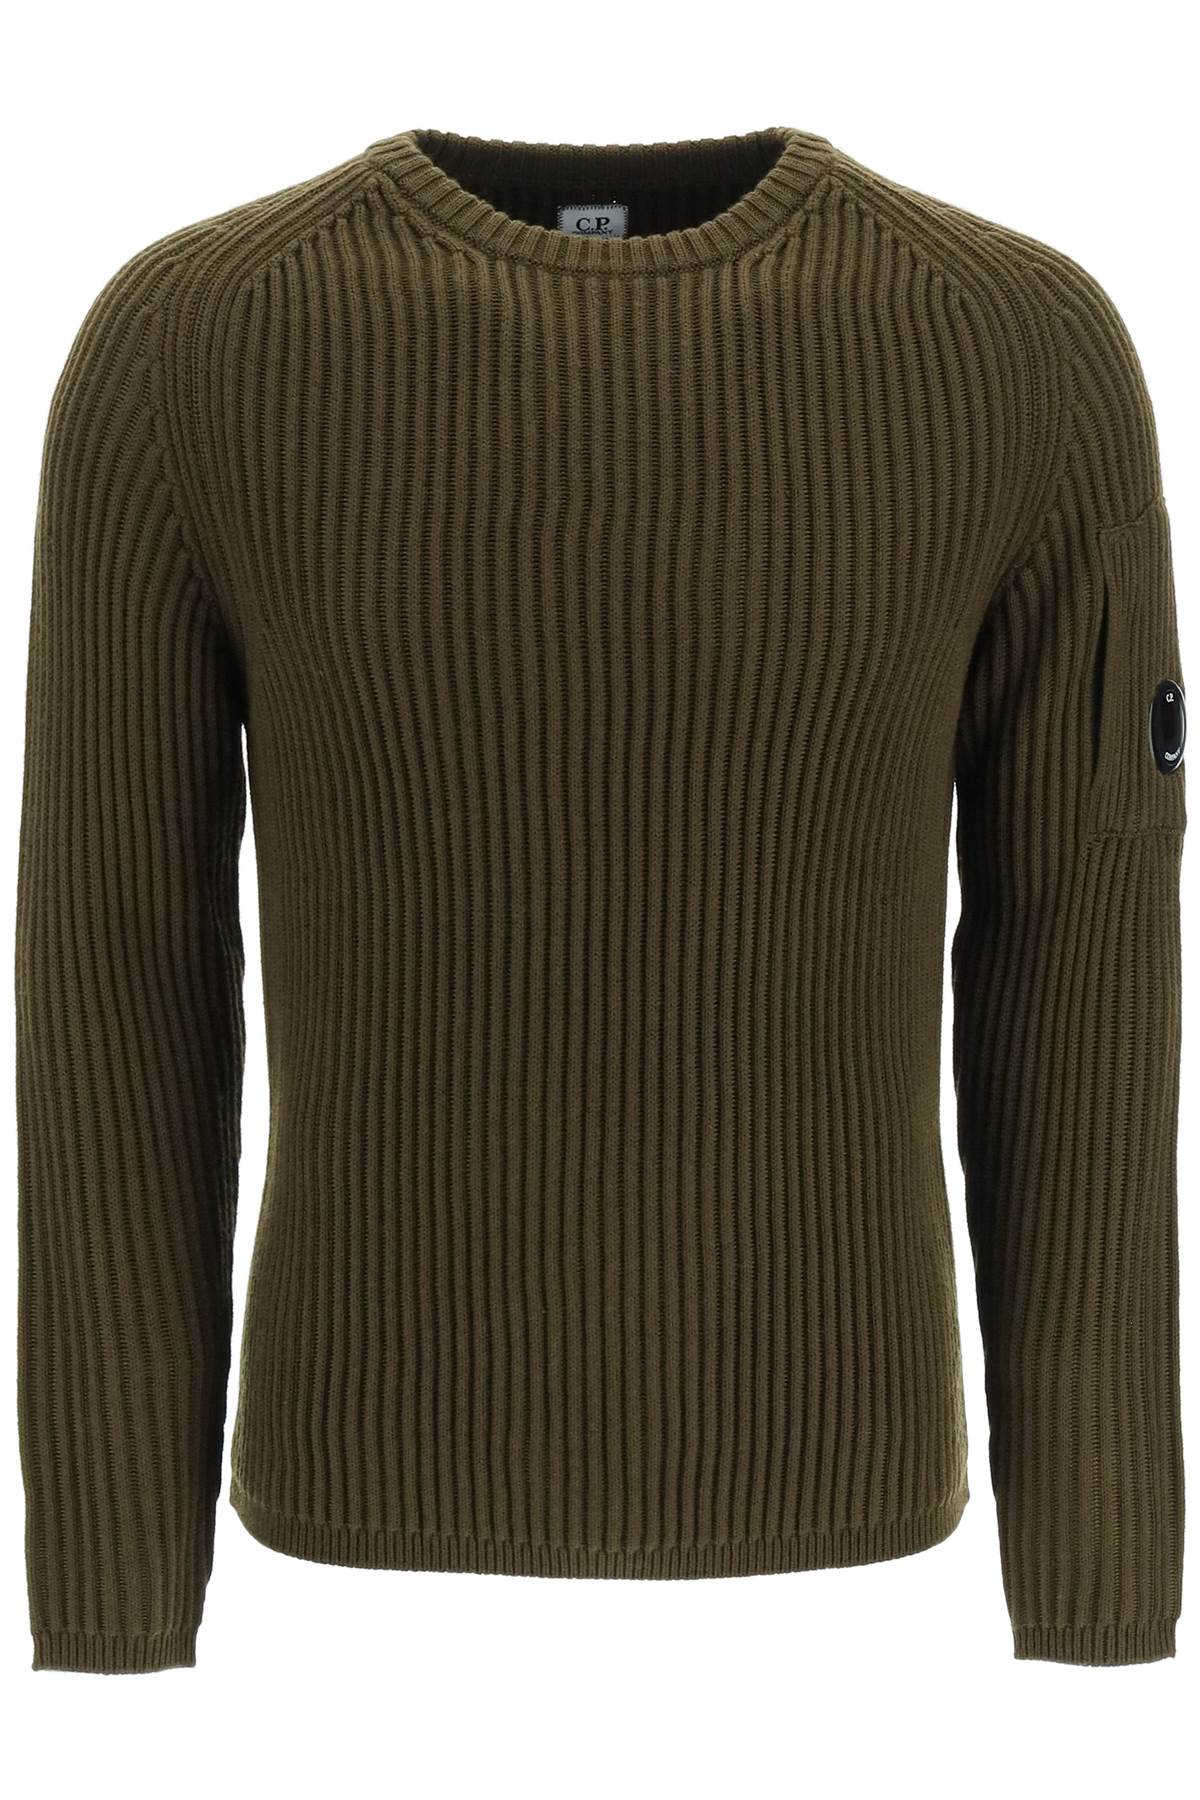 C.P. Company Merino Wool Sweater